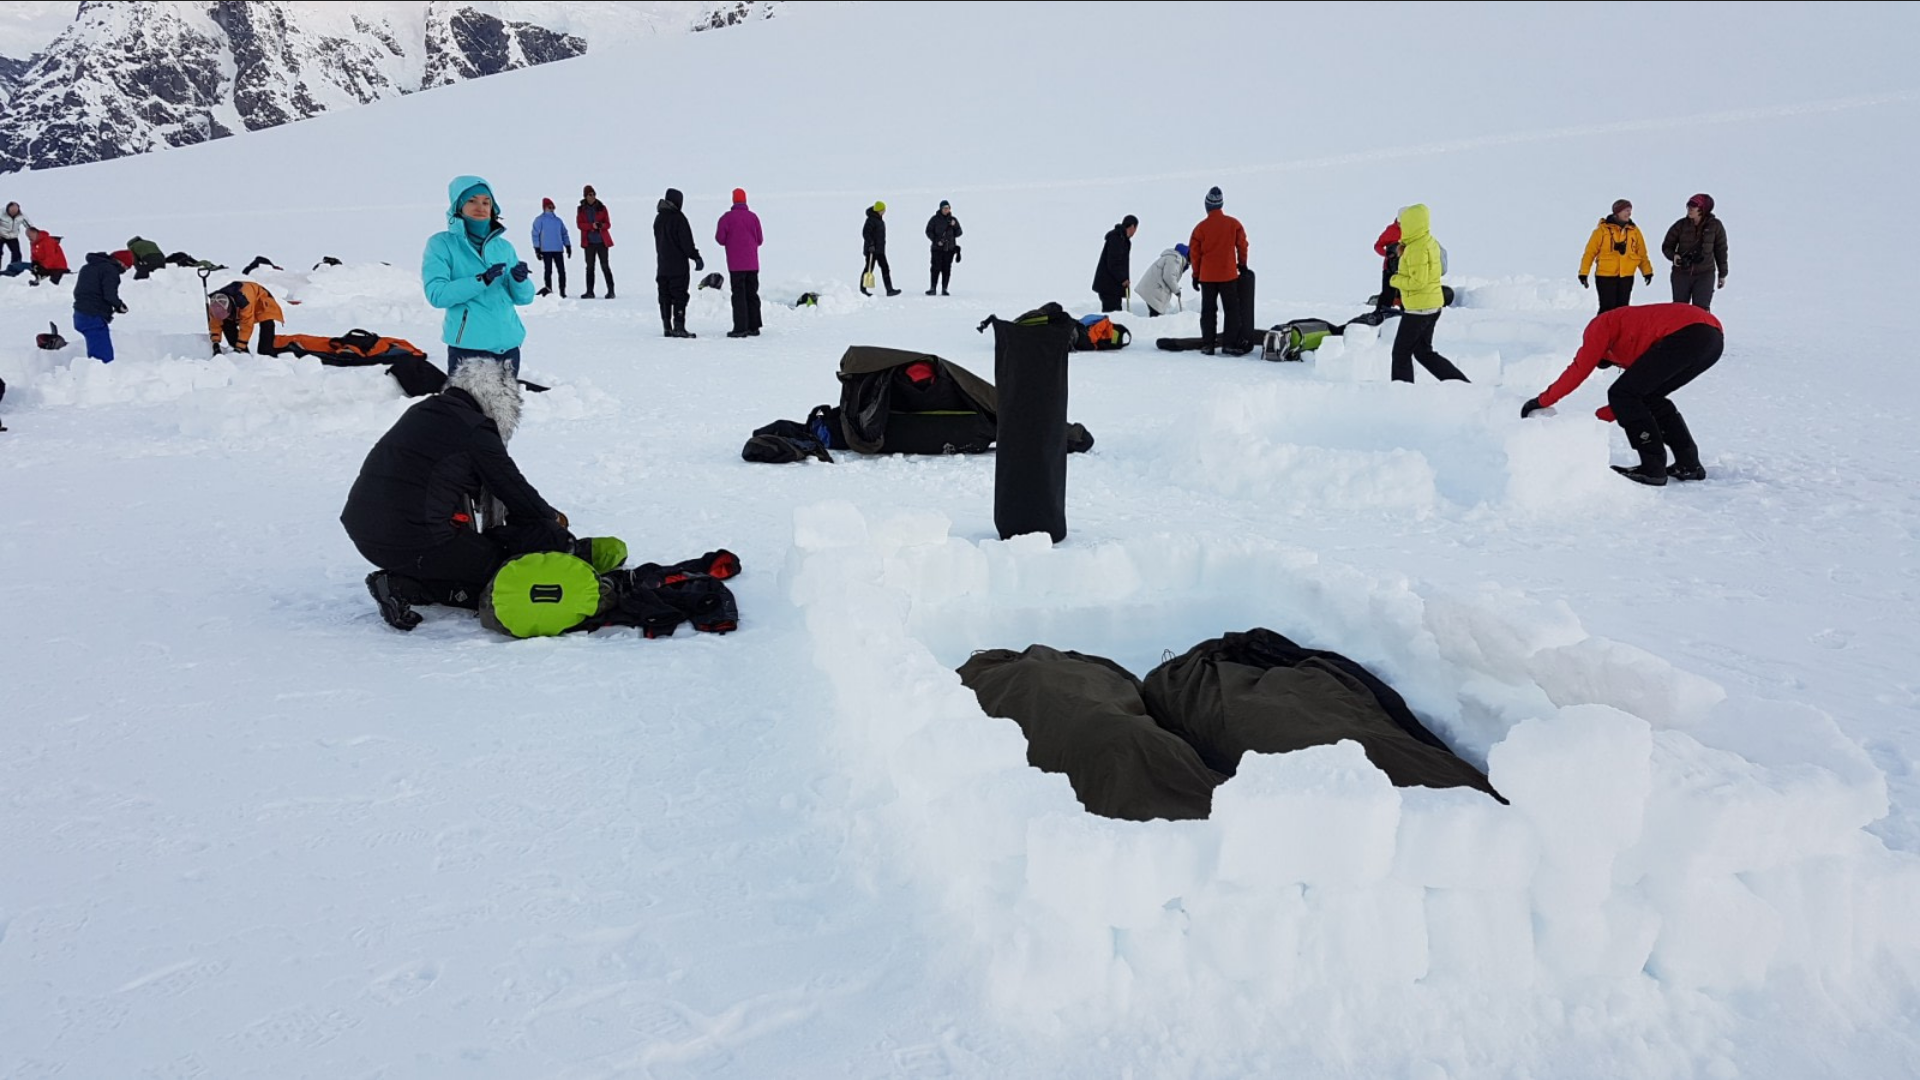 南极洲 - 基地营 - 免费露营,划艇,雪鞋/徒步旅行,登山,摄影工作室